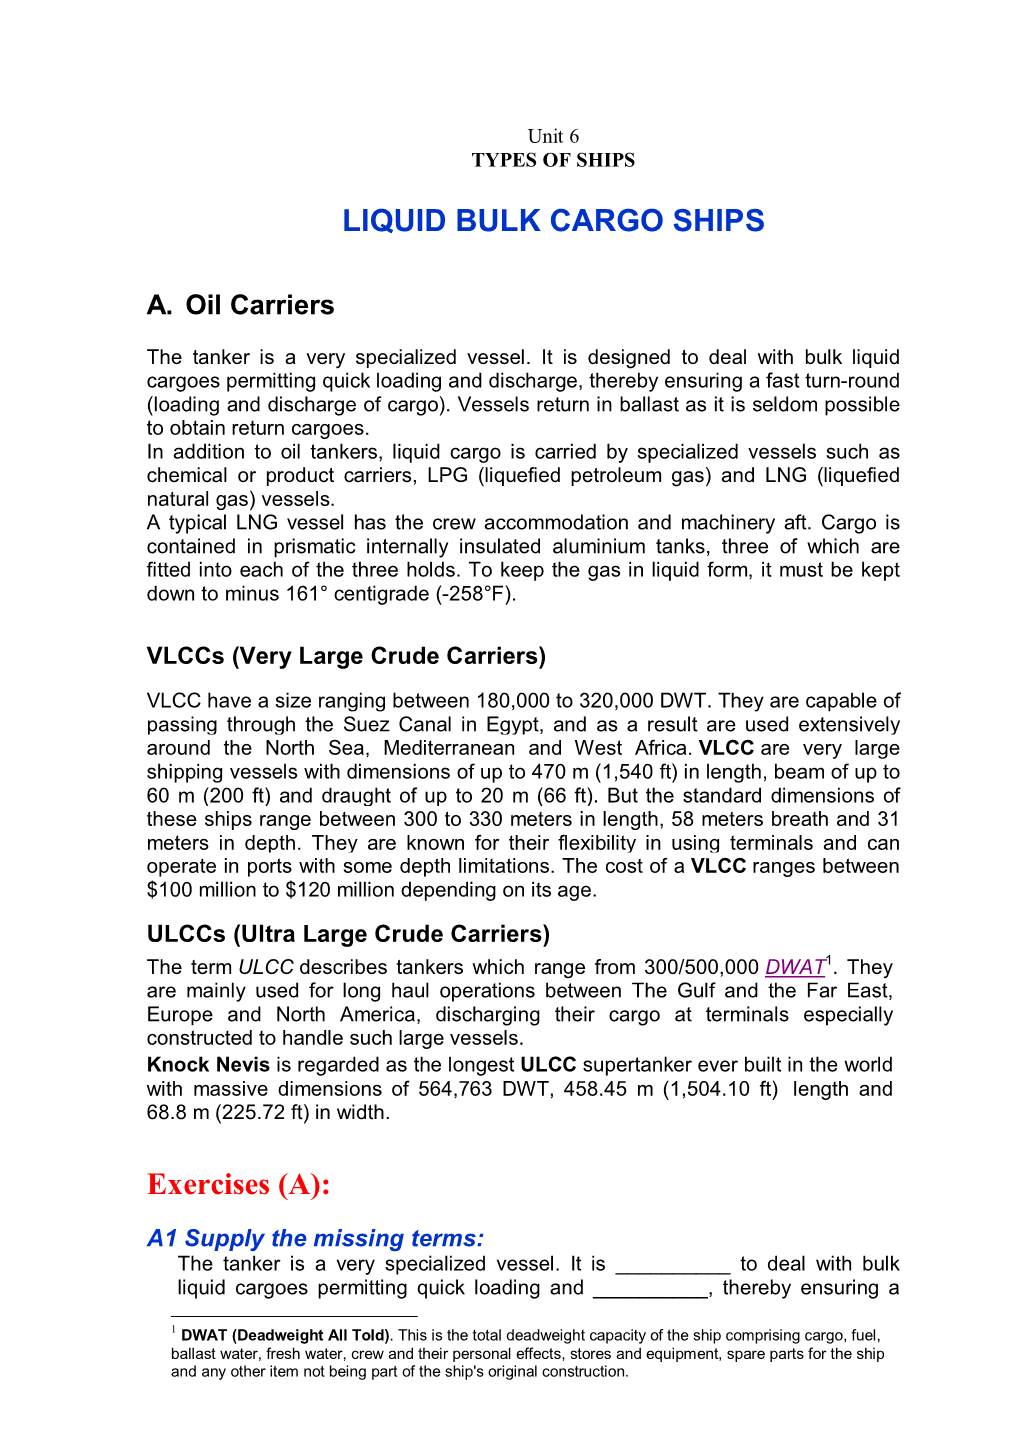 LIQUID BULK CARGO SHIPS Exercises (A)